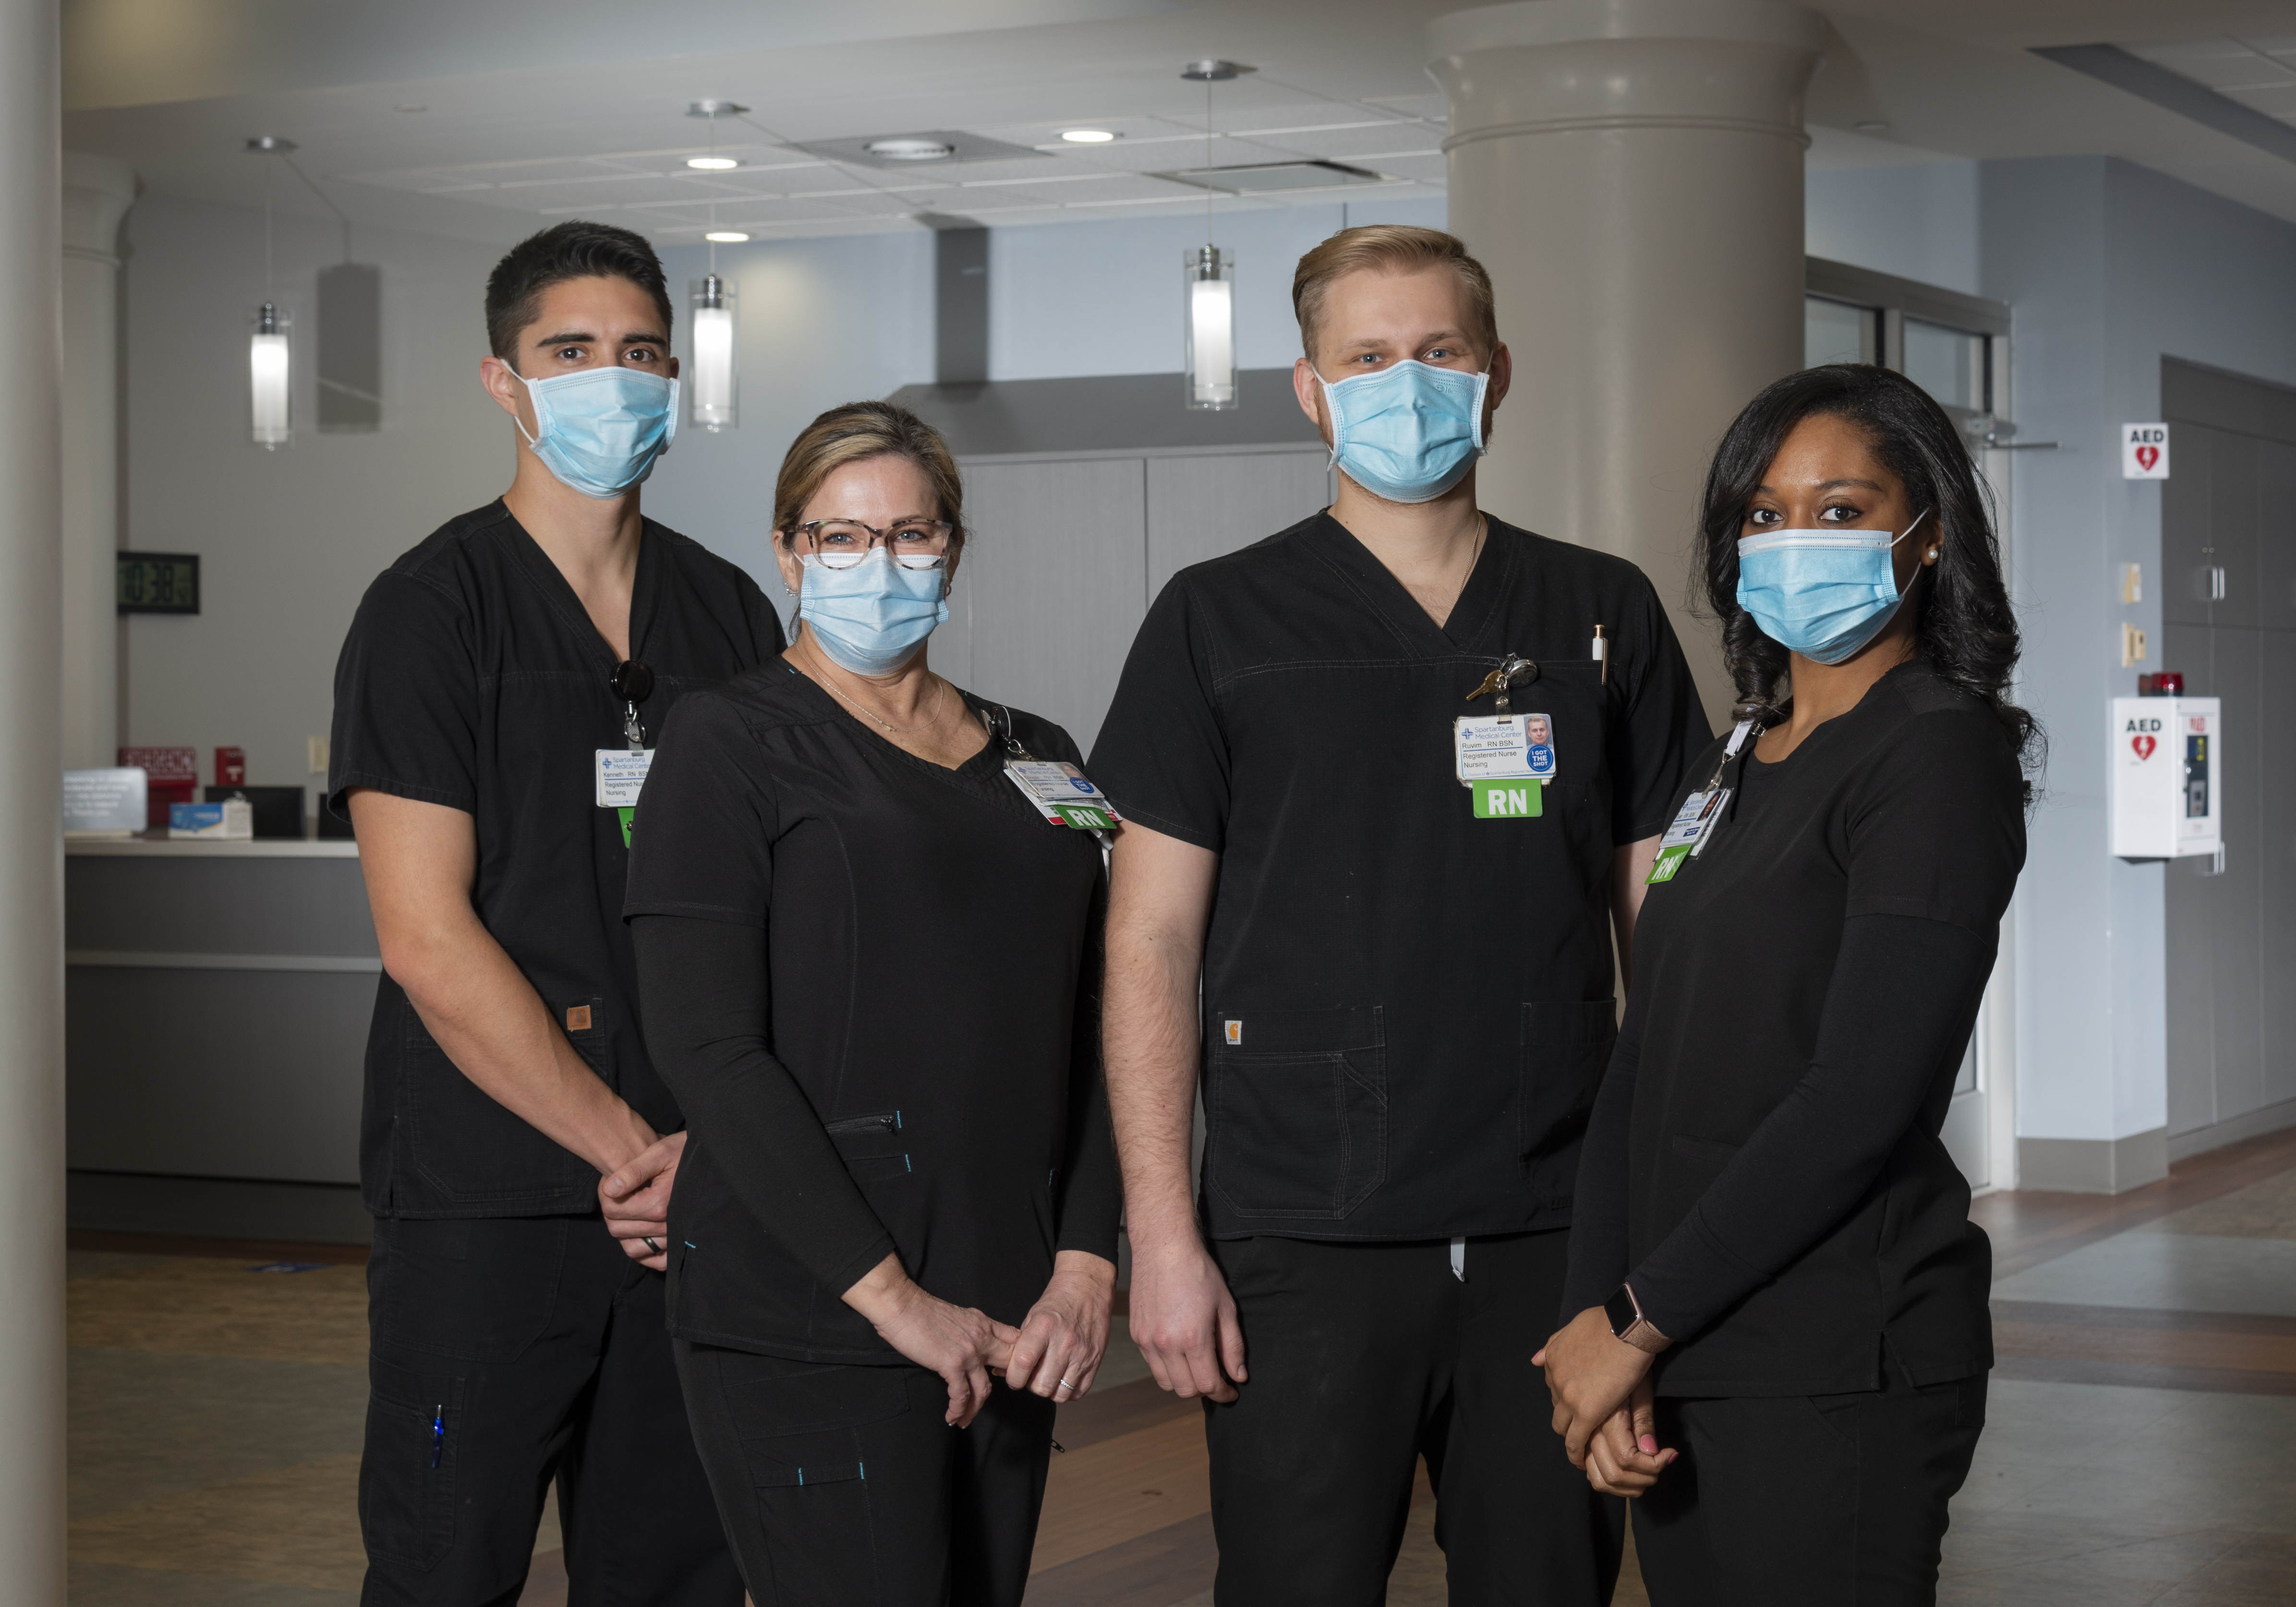 nursing group wearing masks.jpg